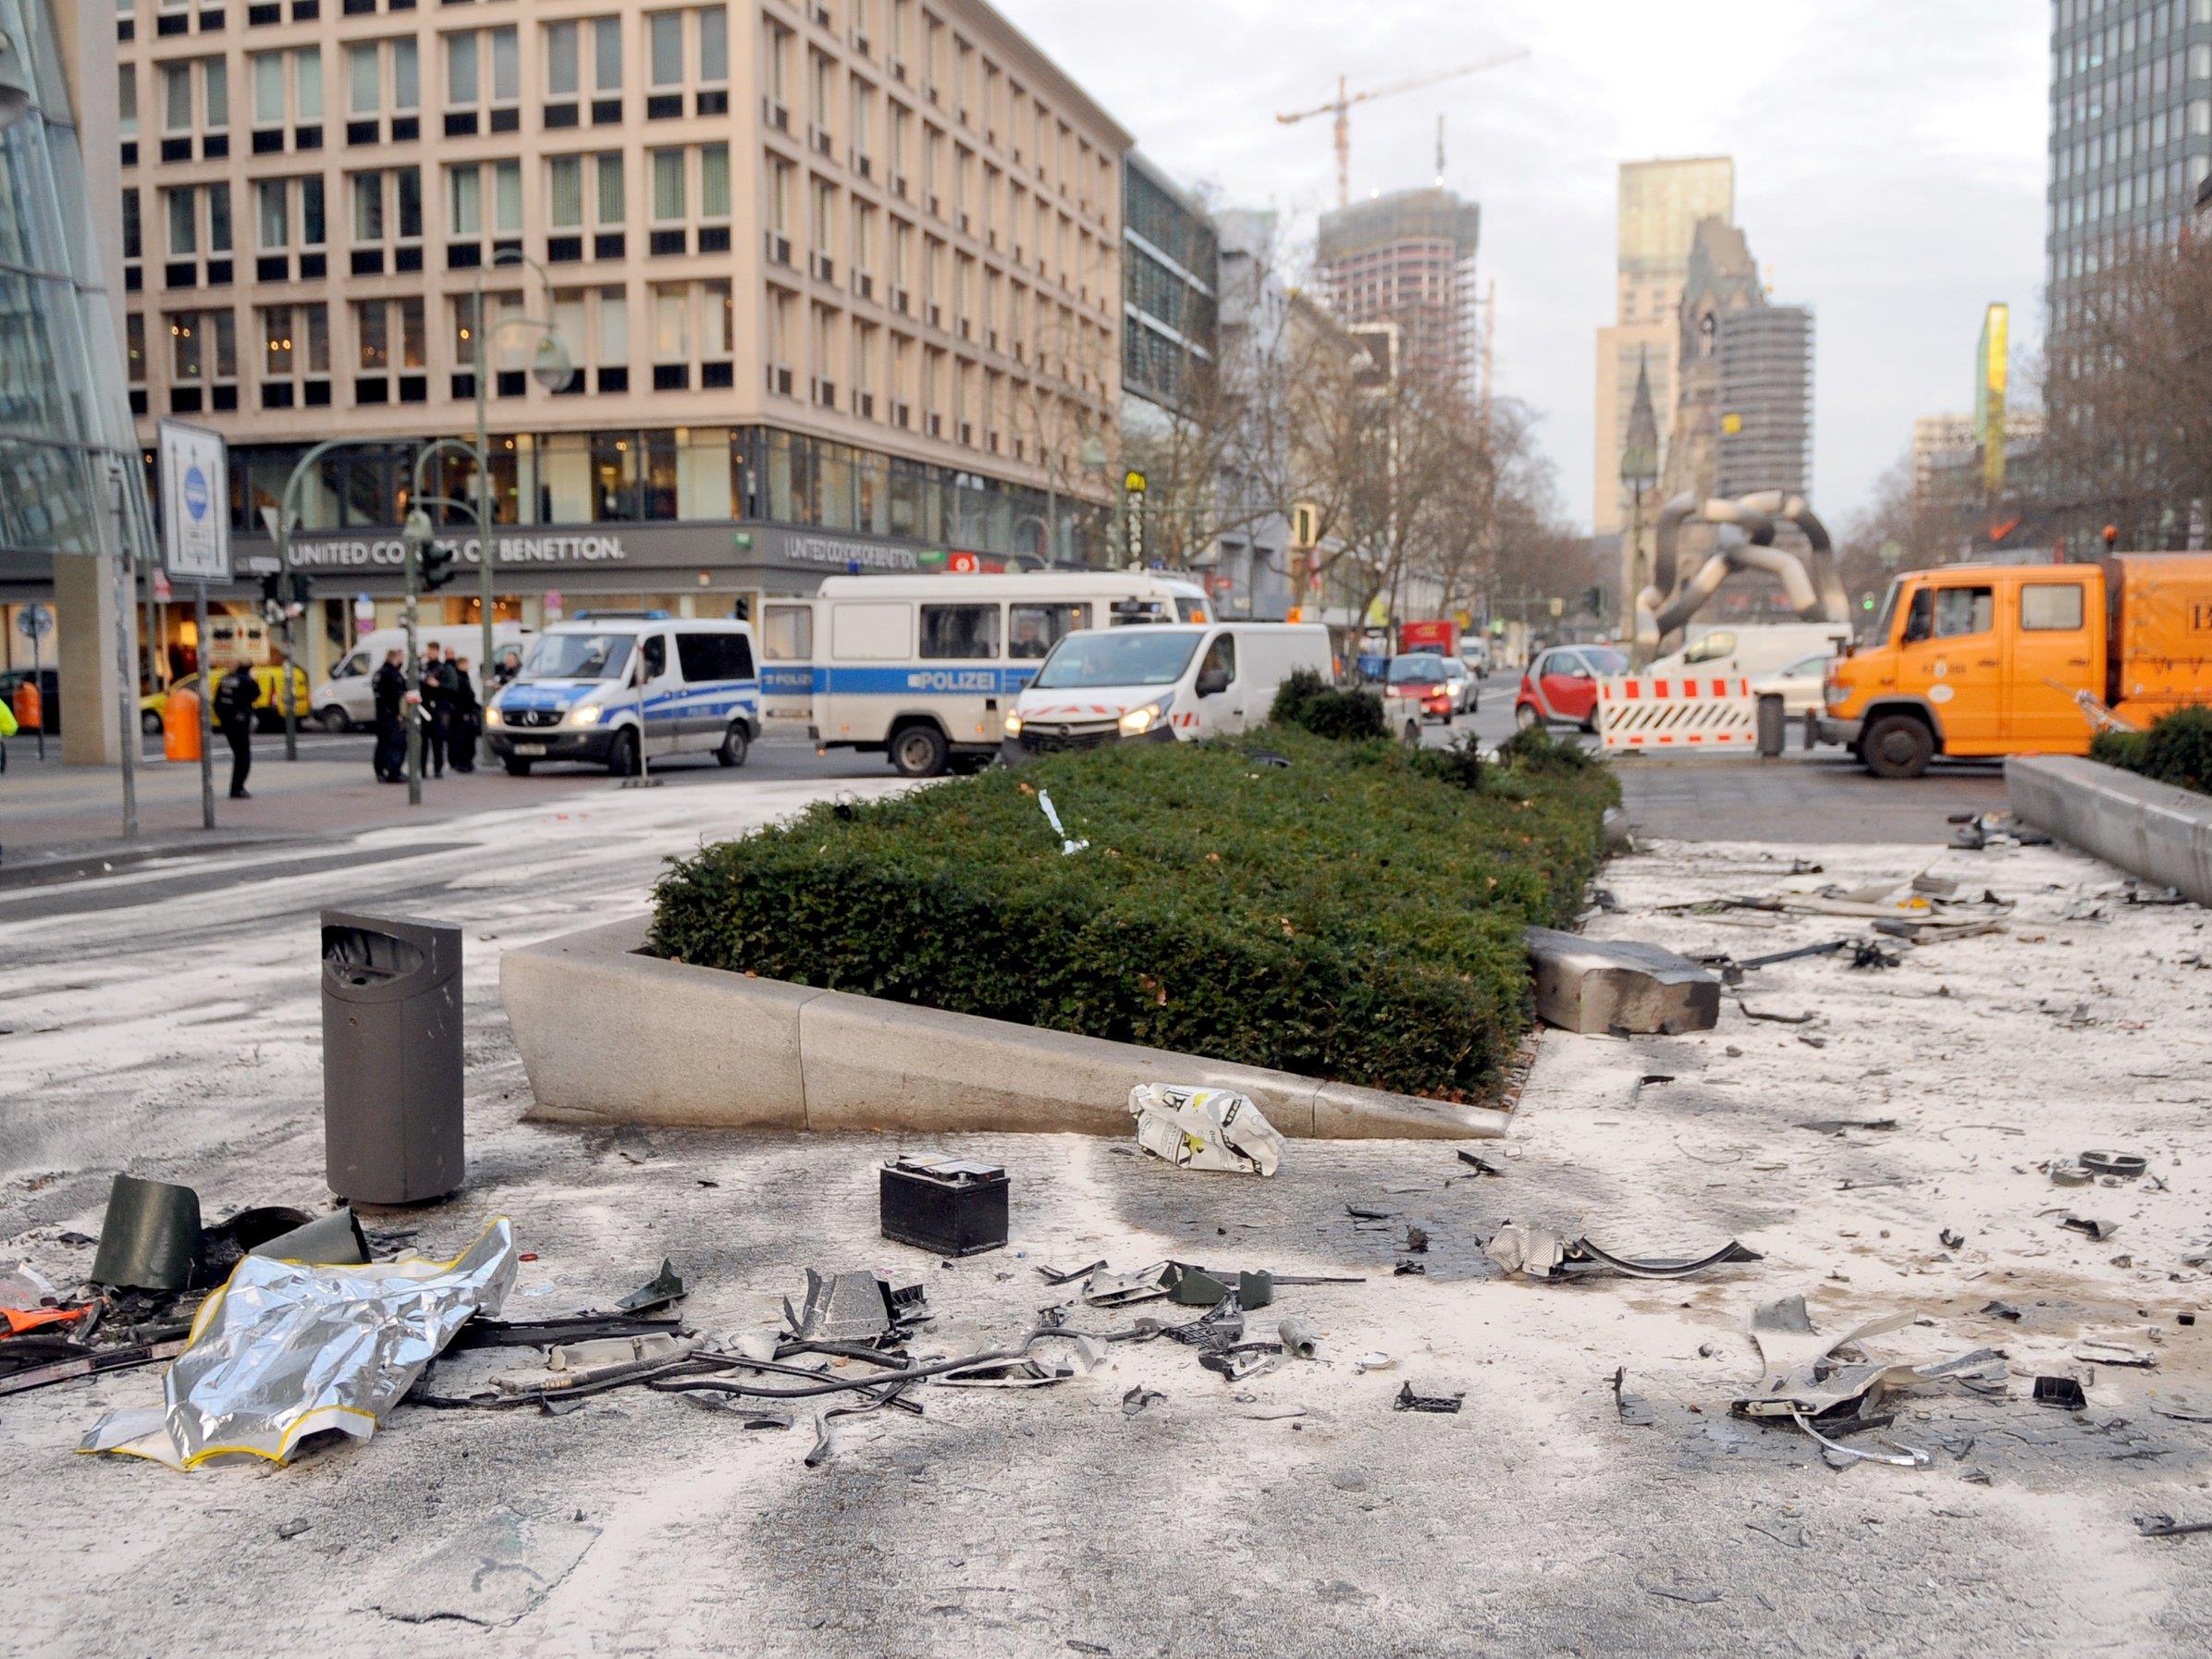 Junge Männer verursachen bei illegalem Straßenrennen mitten in Berlin Horror-Crash: ein Toter.